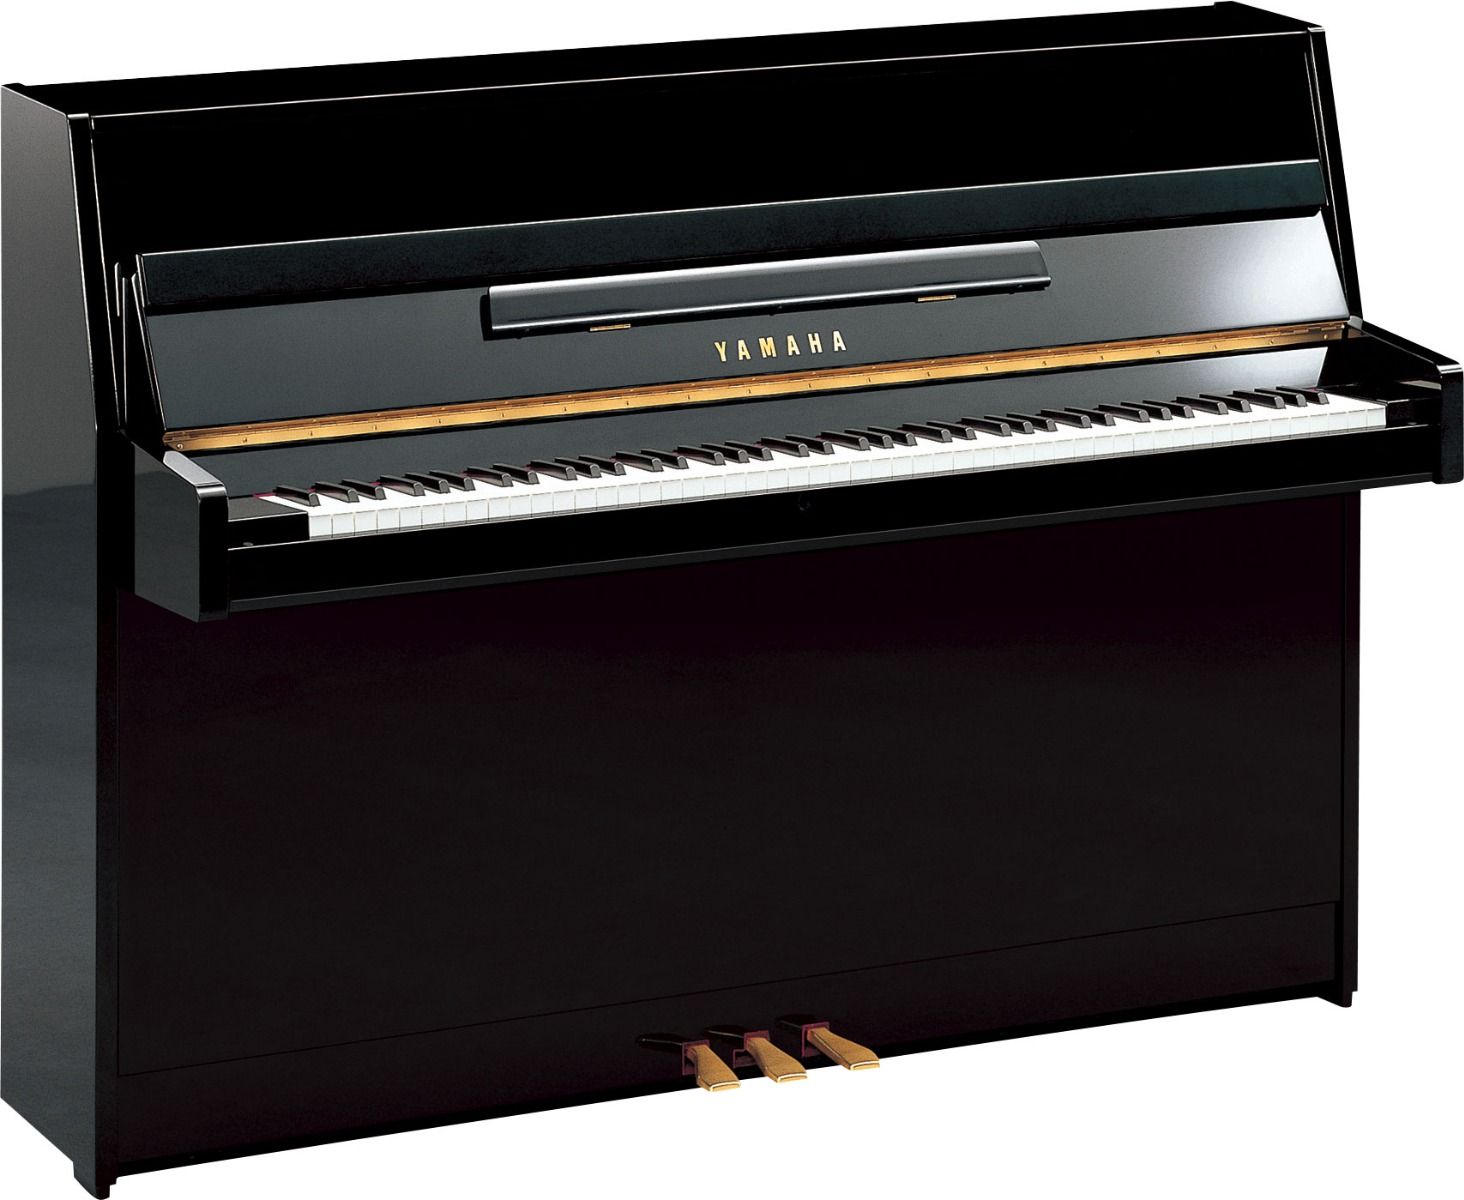 Yamaha B1 PE 43" Upright Piano In Polished Ebony